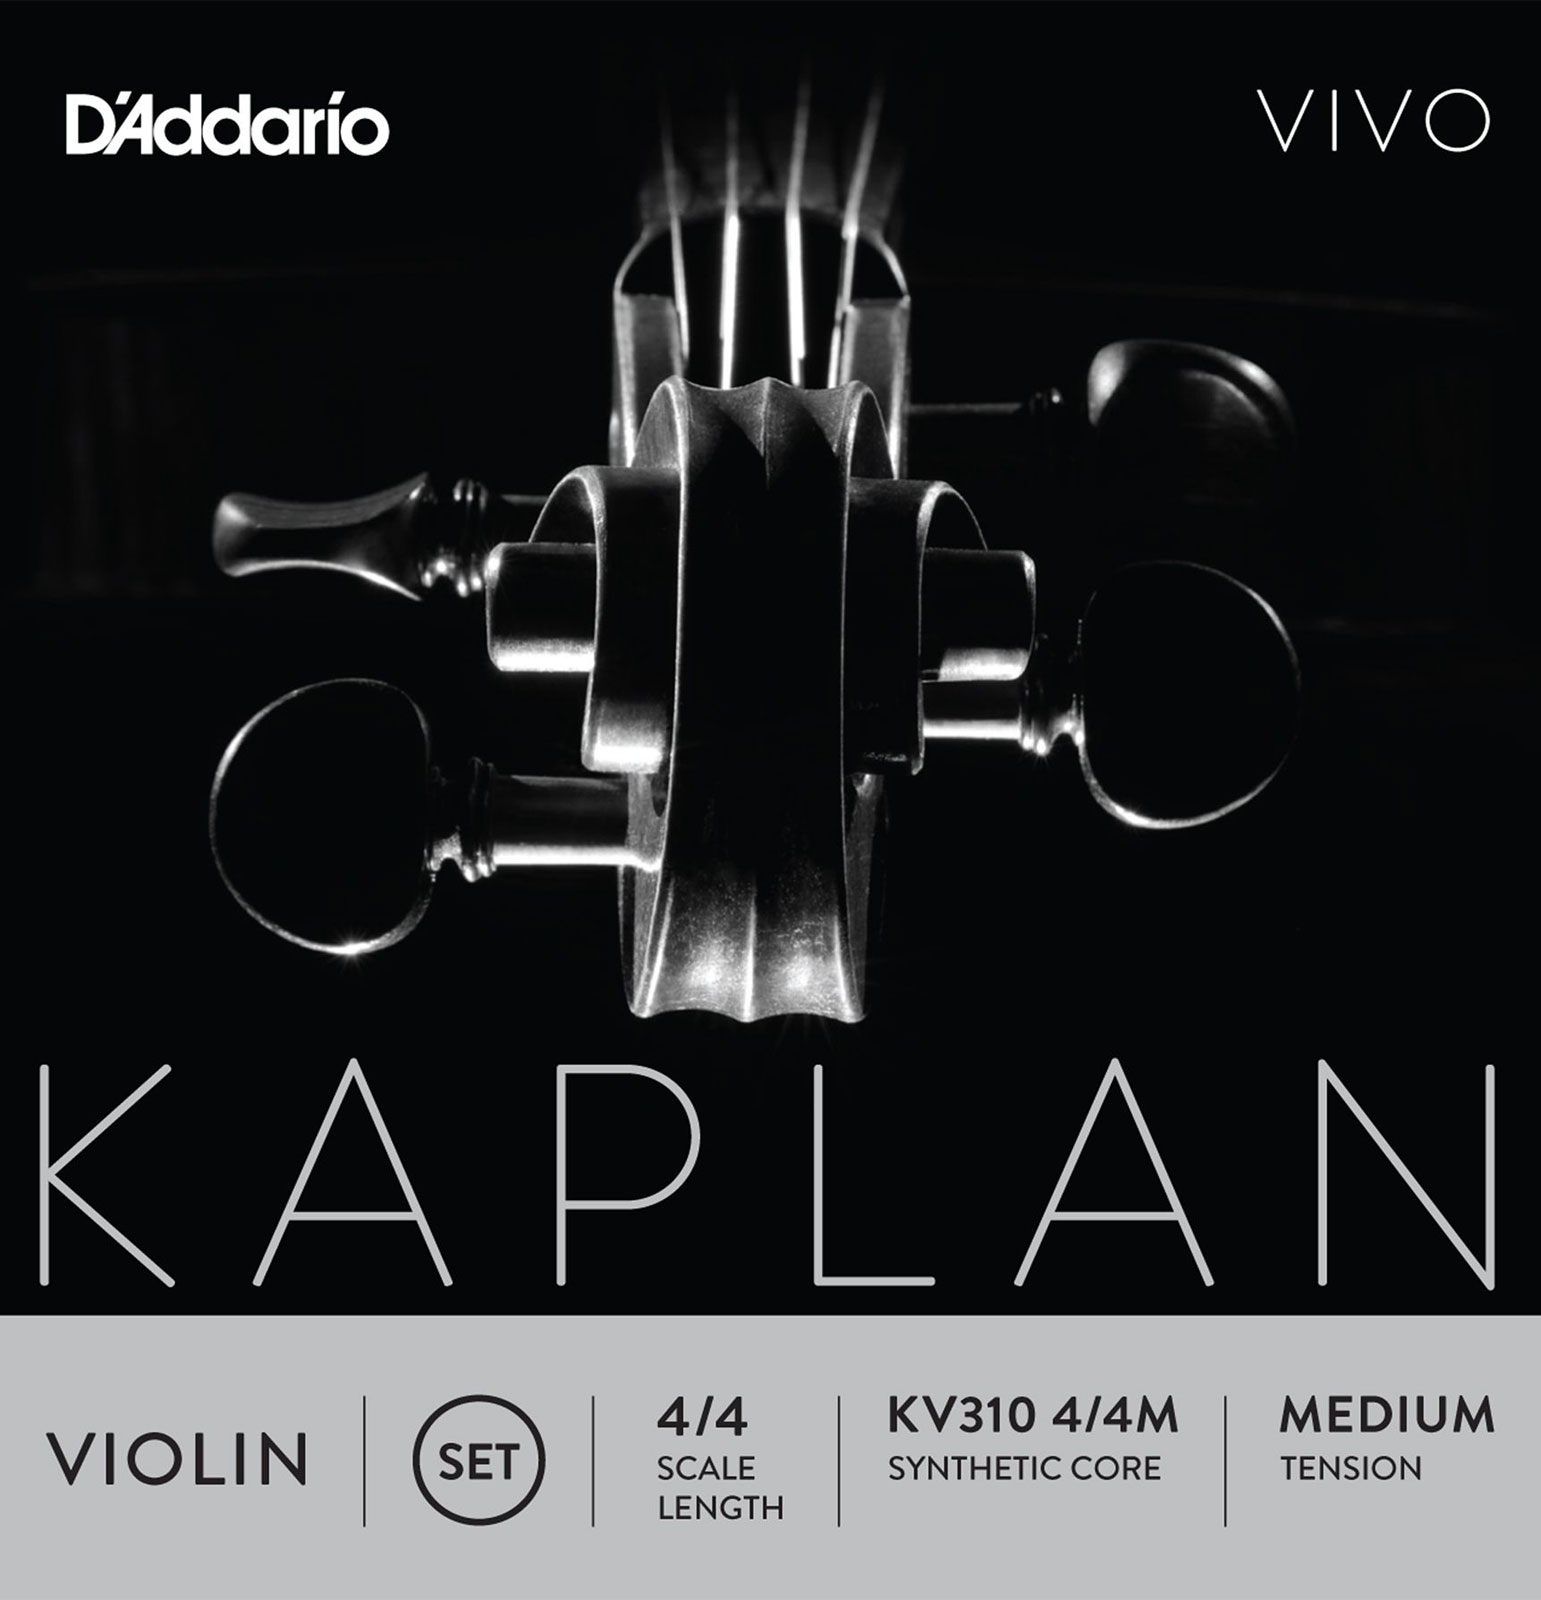 D'ADDARIO AND CO 4/4 CORDES VIOLON KAPLAN VIVO MEDIUM